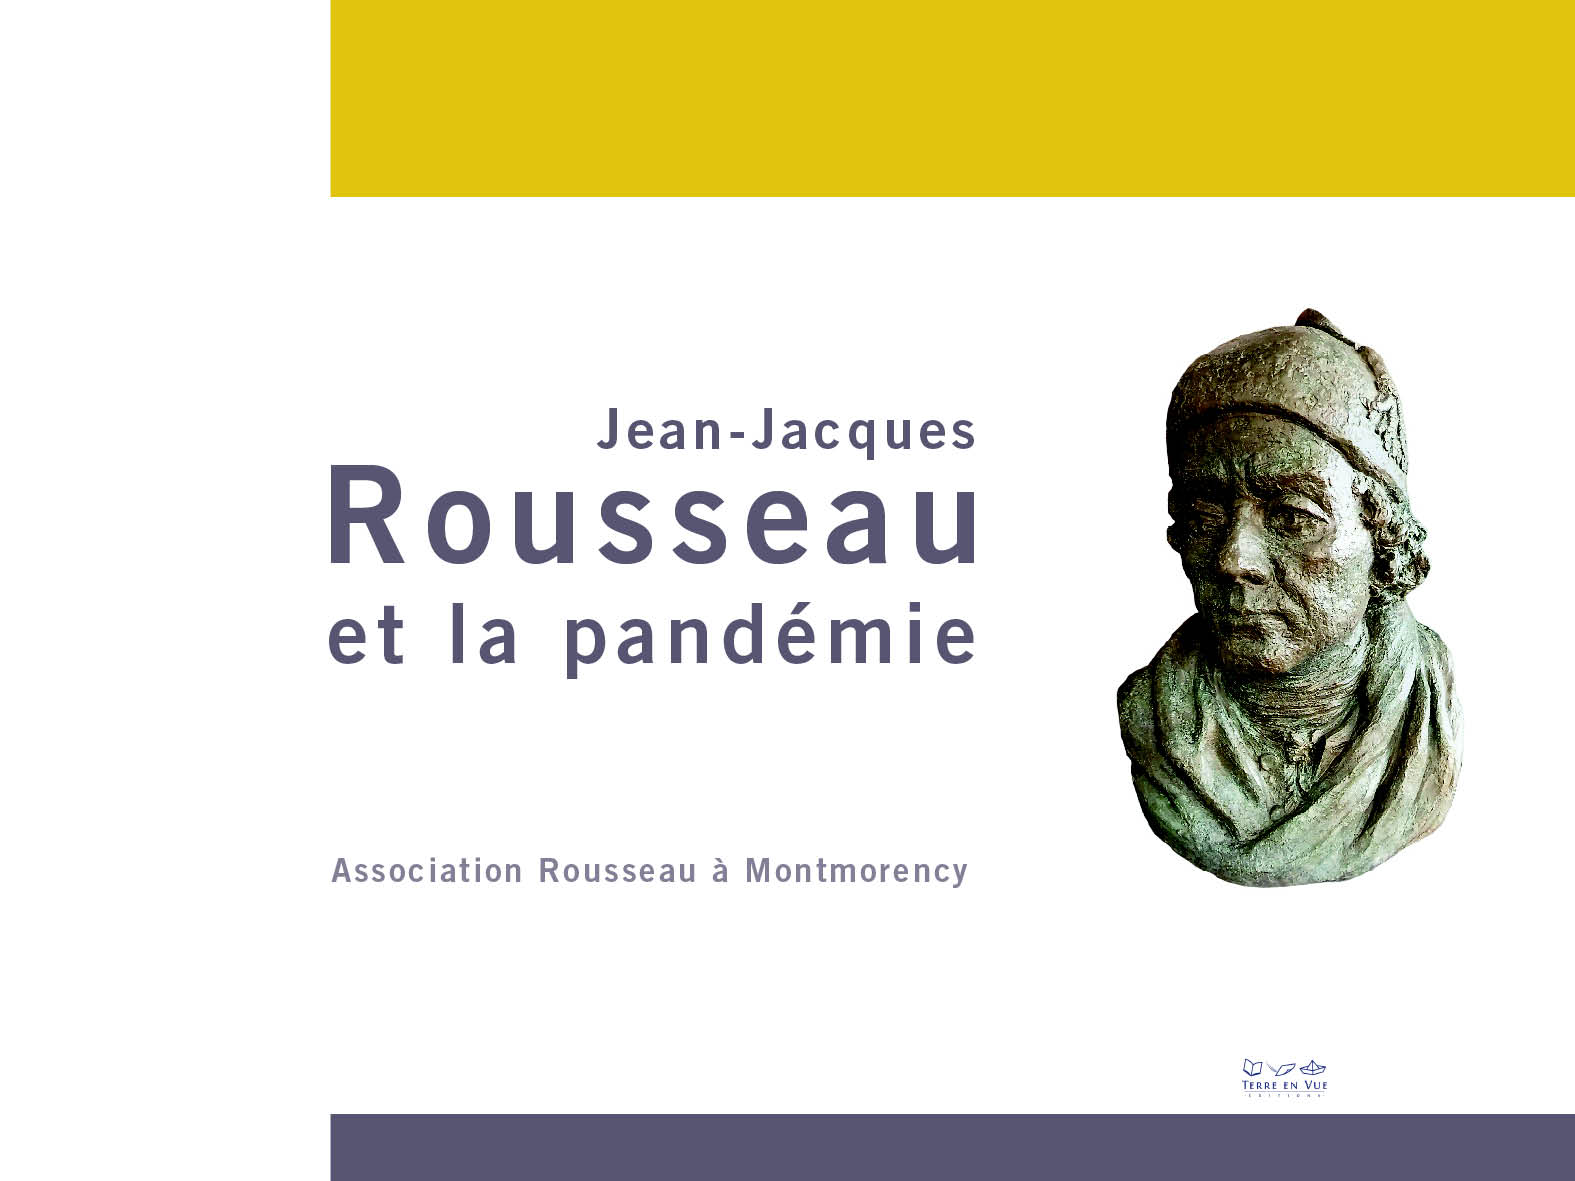 Jean-Jacques Rousseau et la pandémie